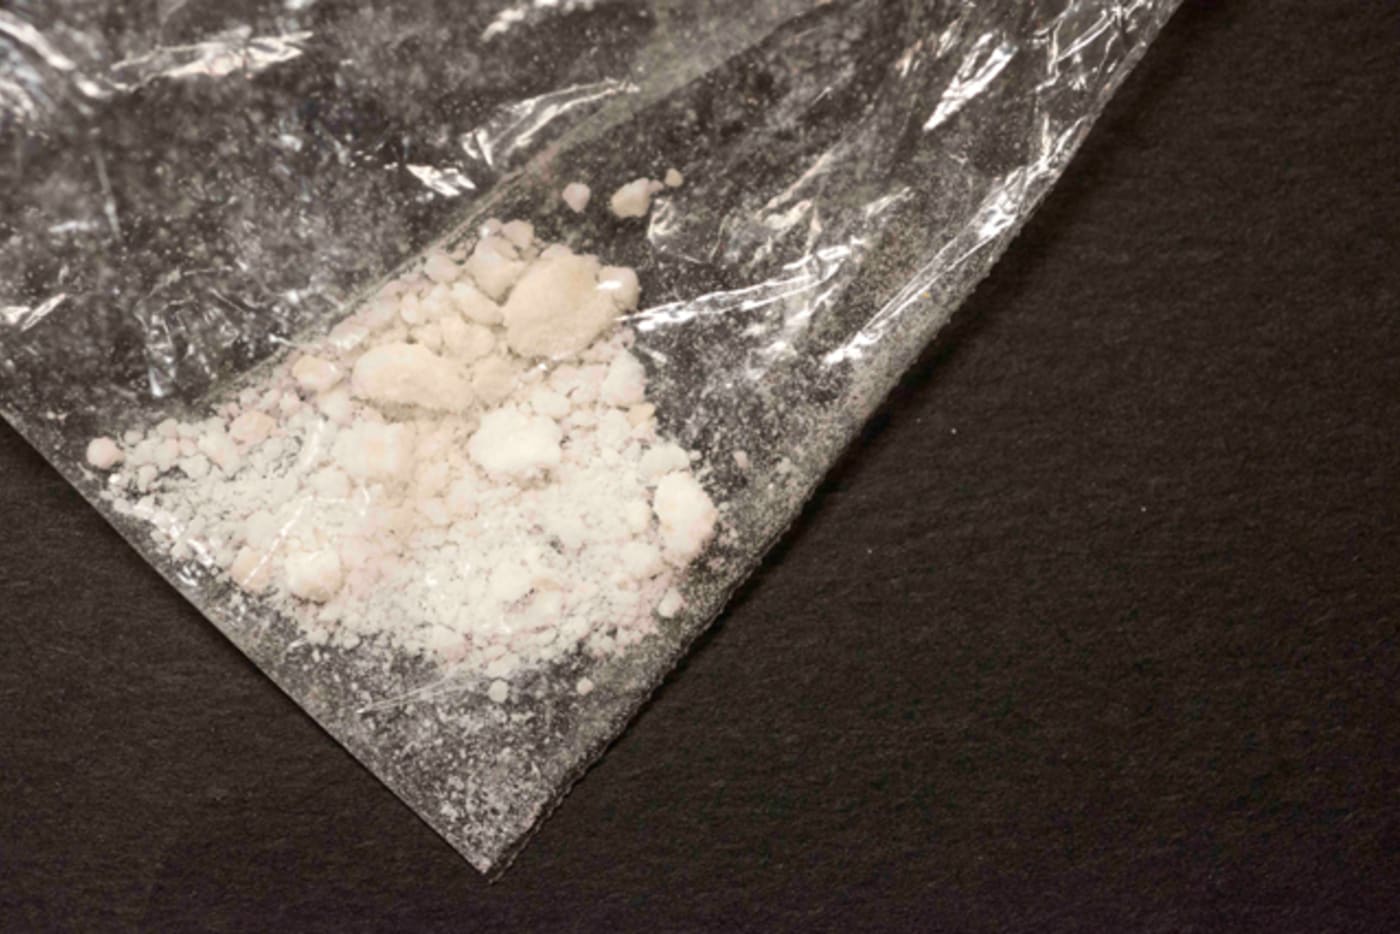 A bag of fentanyl